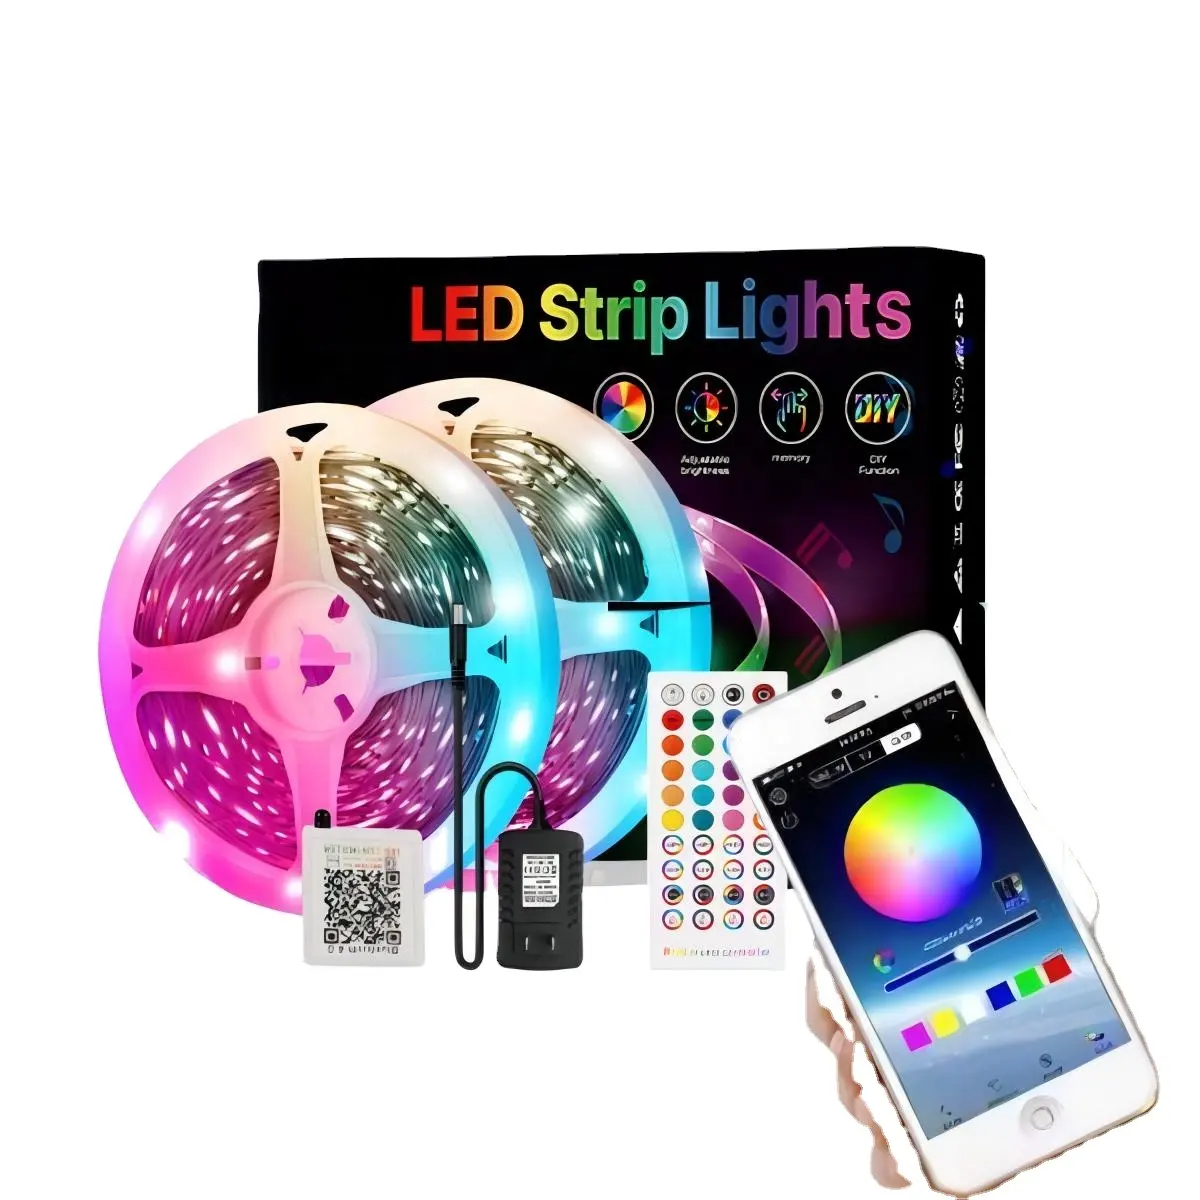 Kit Strip LED pintar RGB fleksibel, lampu Strip Led pintar RGB 12V, kontrol jarak jauh aplikasi sinkronisasi musik, kamar tidur, TV PC, lampu latar sekitar SMD 5050